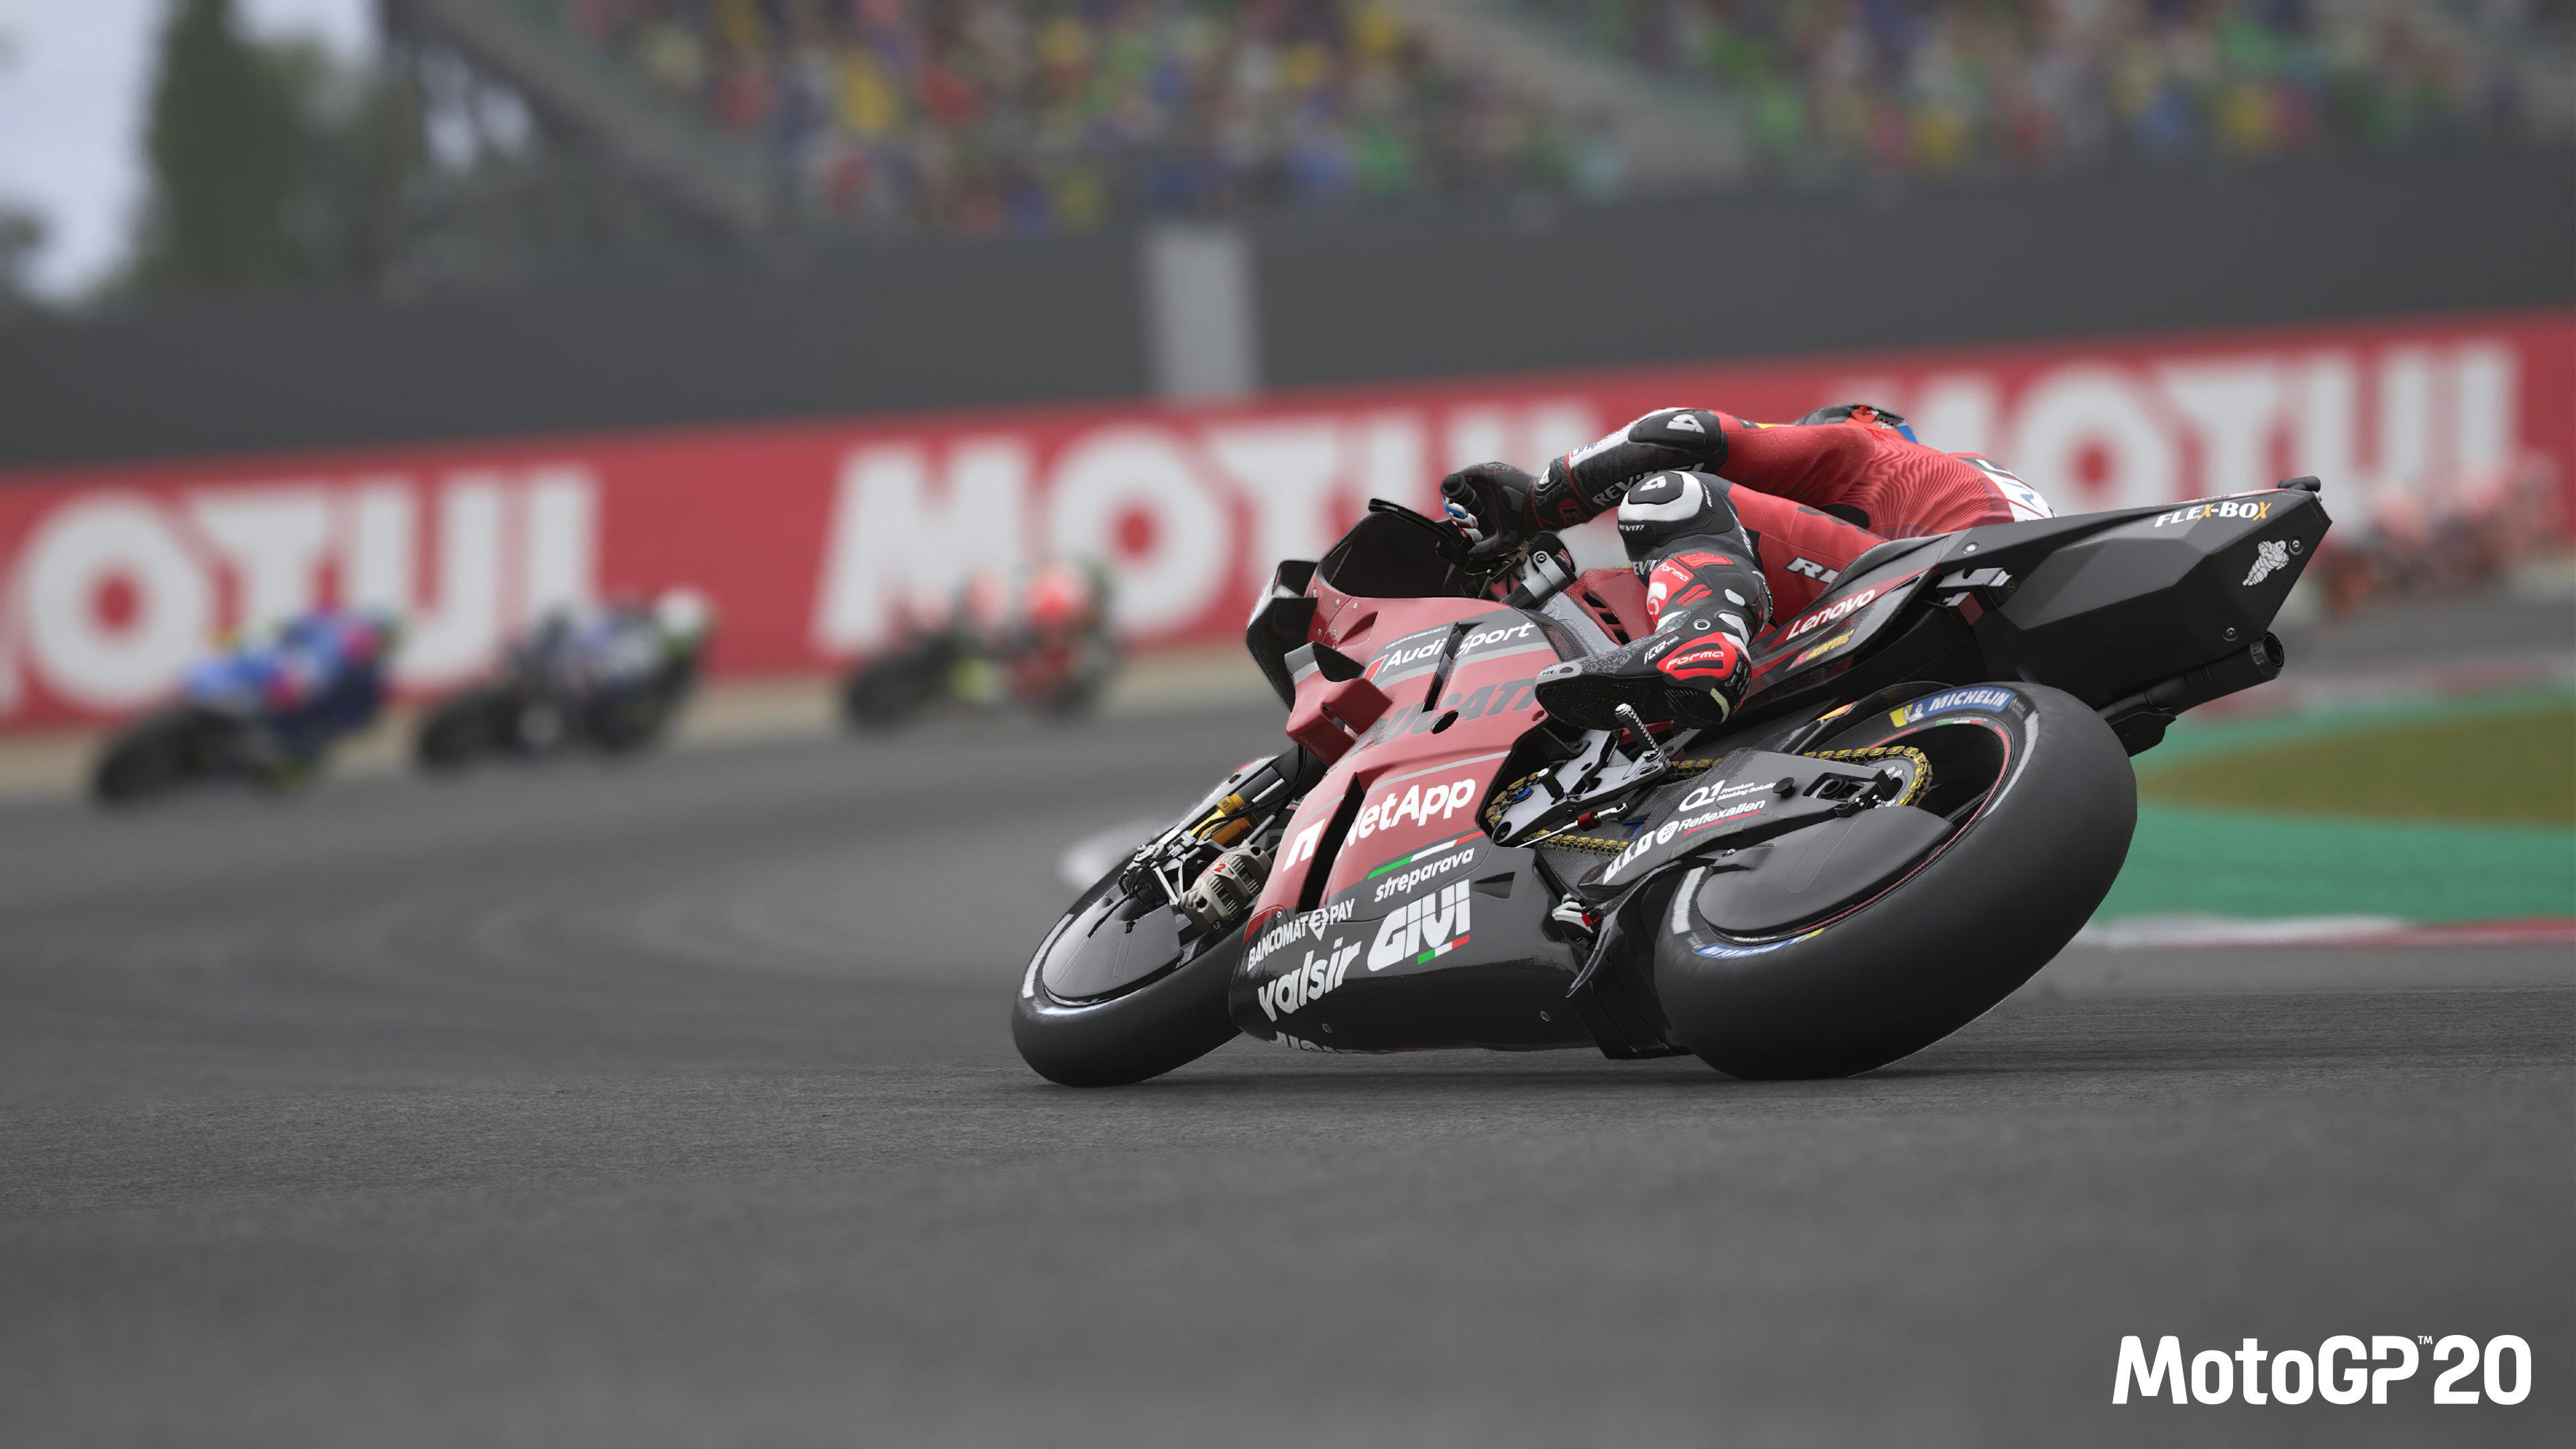 Moto GP 14 Xbox 360 em Promoção na Americanas